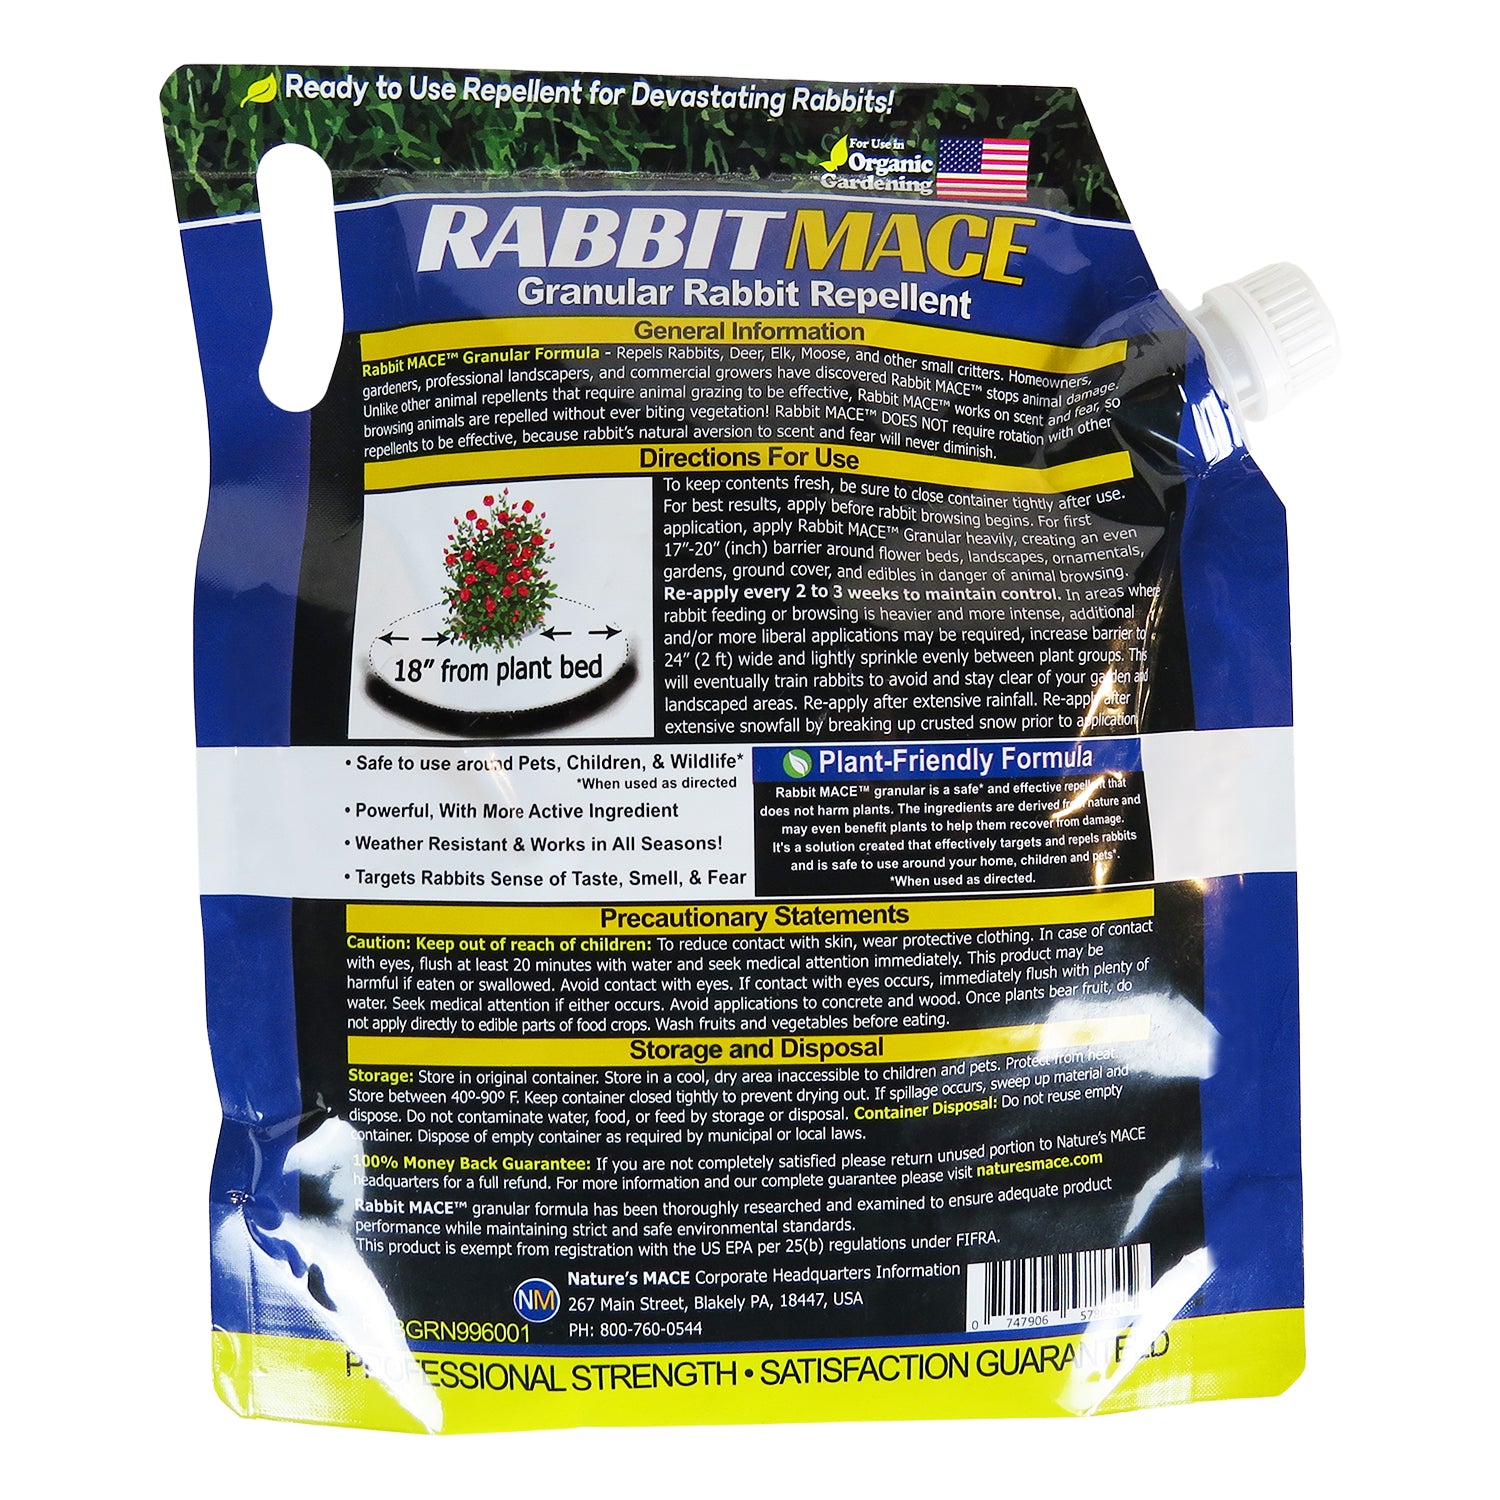 Rabbit MACE Granular Rabbit Repellent